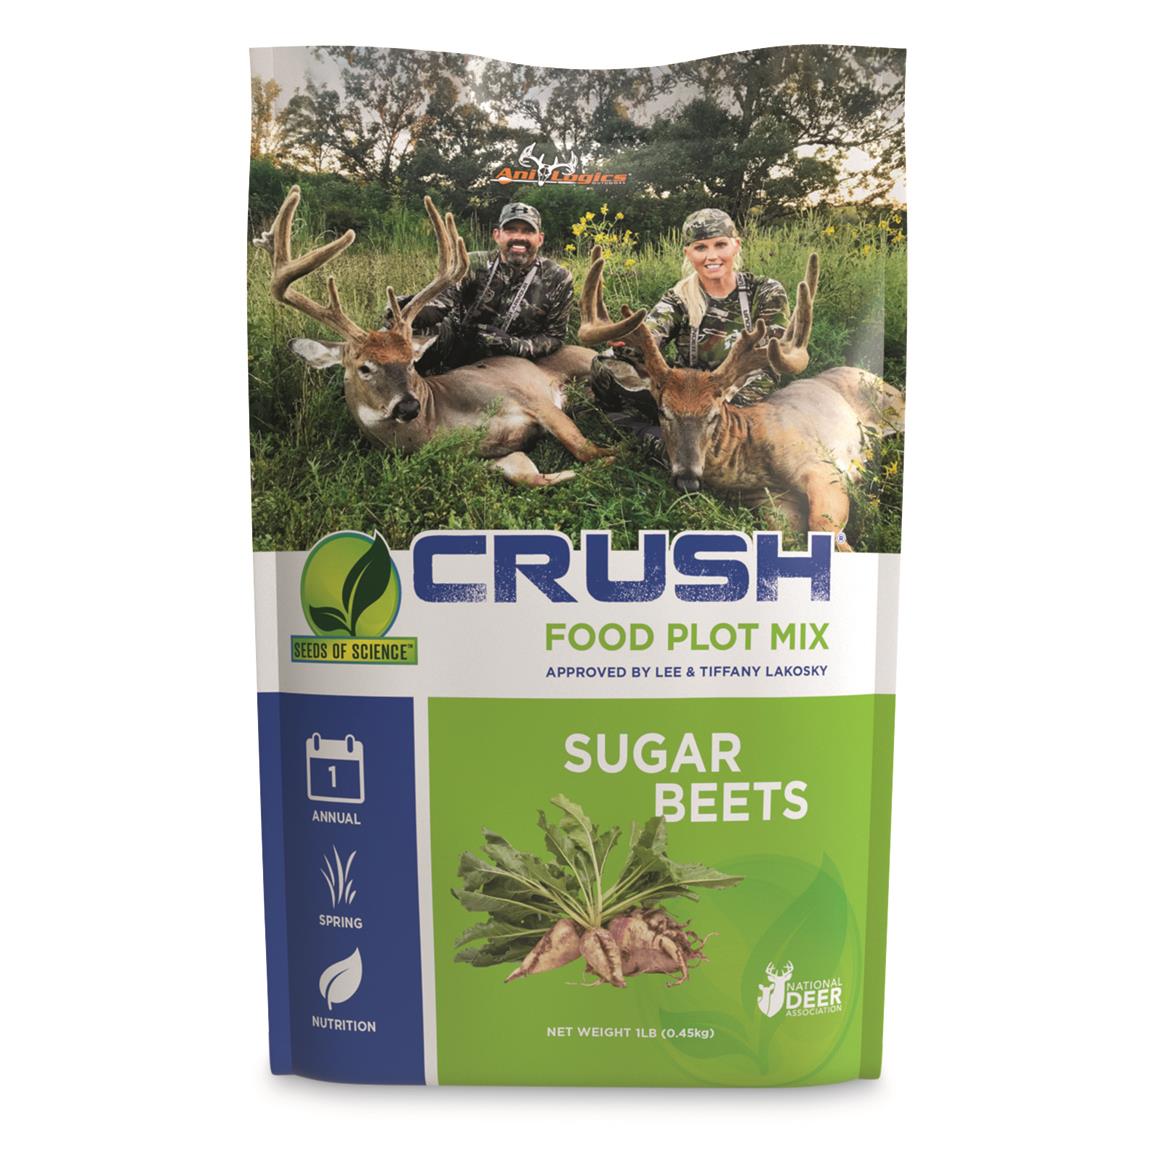 Ani-Logics Crush Sugar Beets Food Plot Mix, 1 lb. Bag